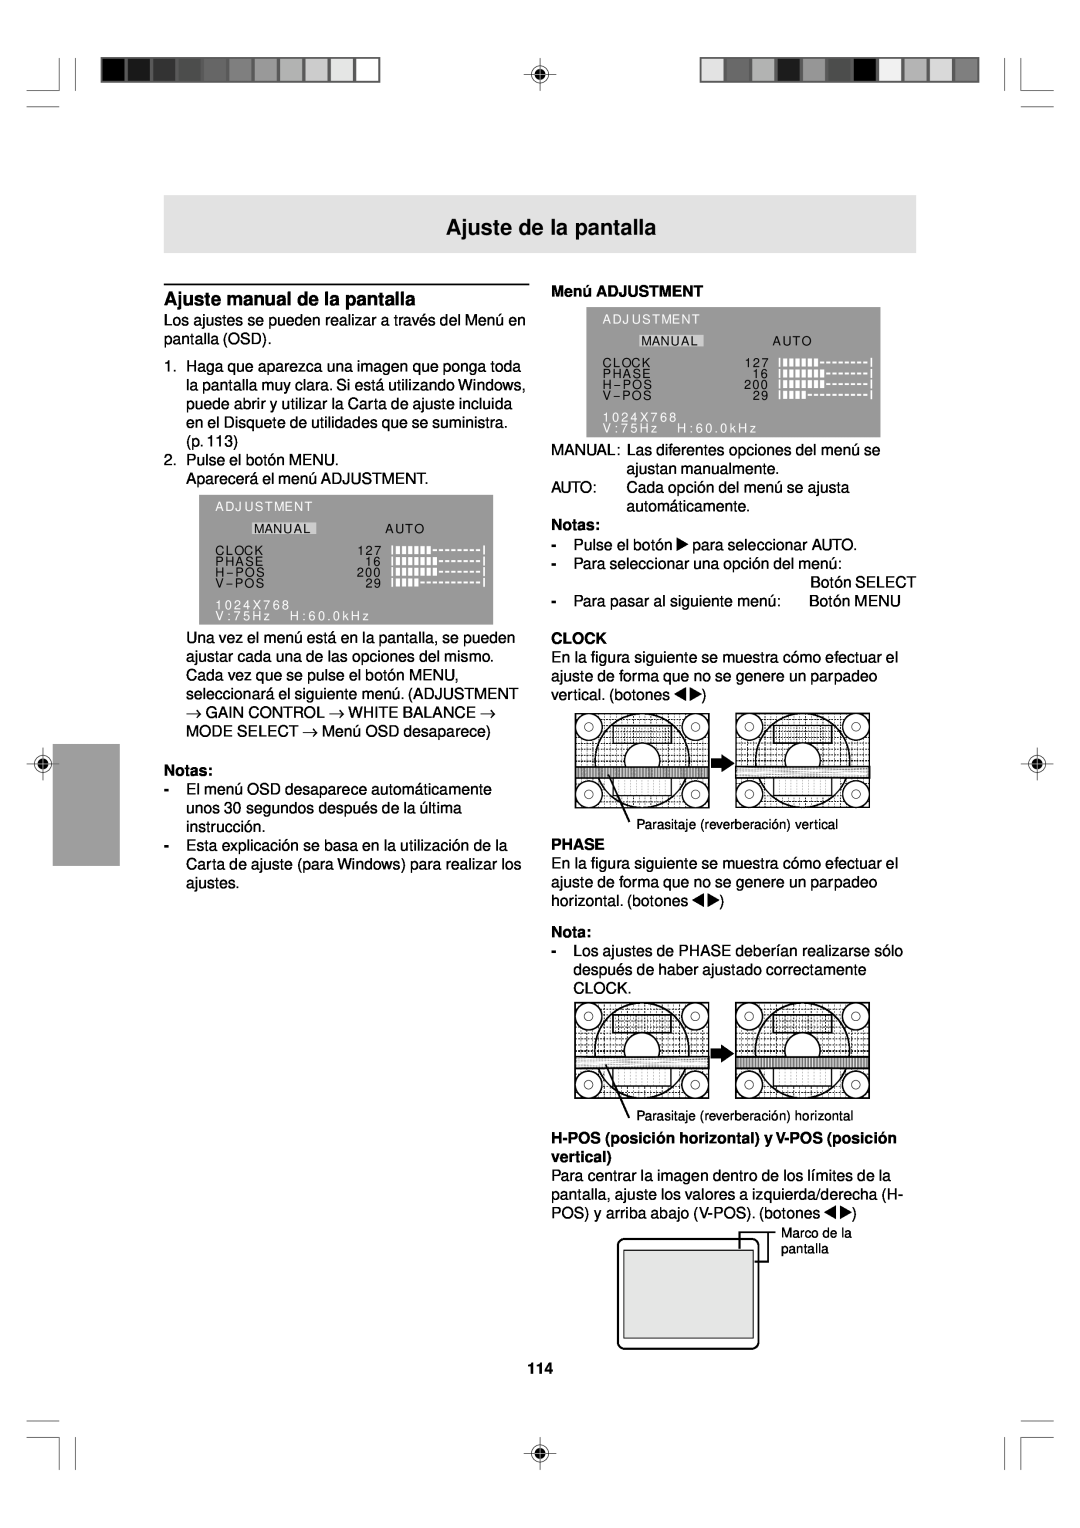 Sharp LL-T15V1 Ajuste manual de la pantalla, Menú ADJUSTMENT, H-POS posición horizontal y V-POS posición vertical, Notas 